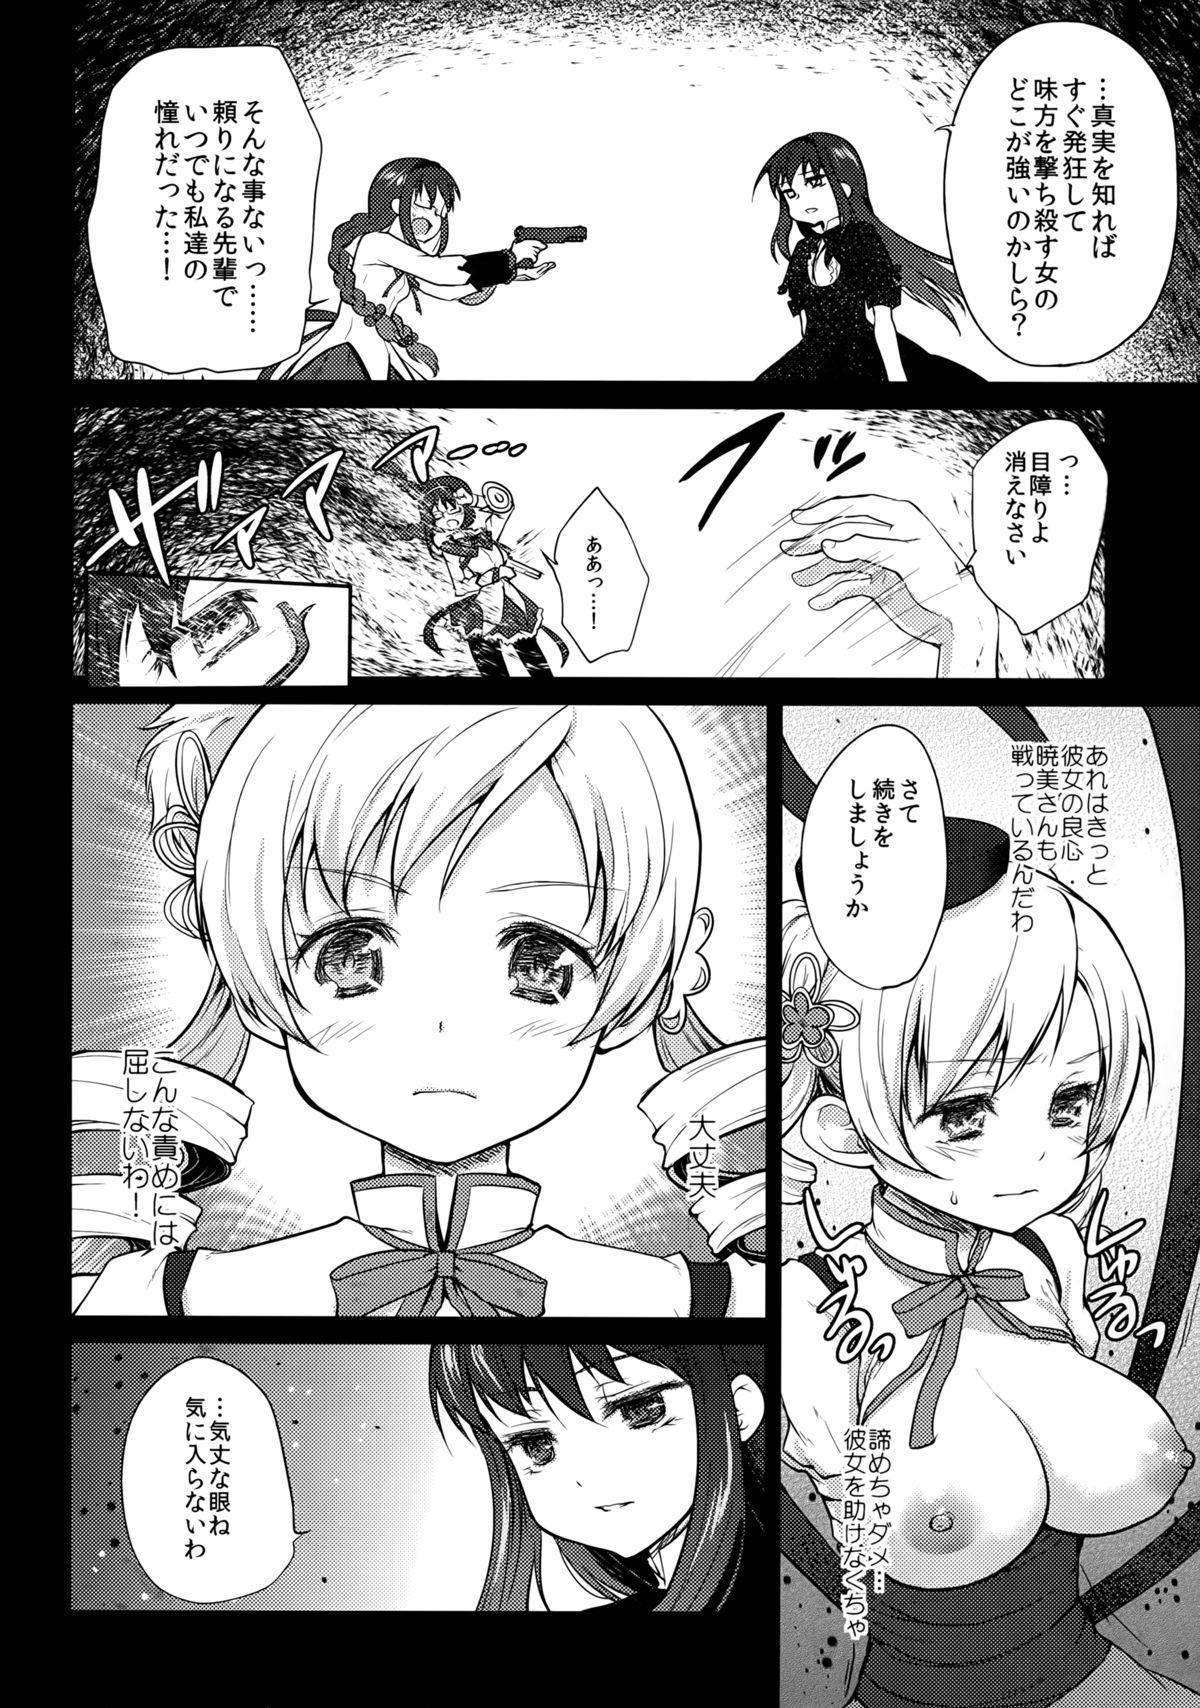 Ano Hitoribocchi wa Sabishii Mono ne - Puella magi madoka magica Teen Hardcore - Page 8